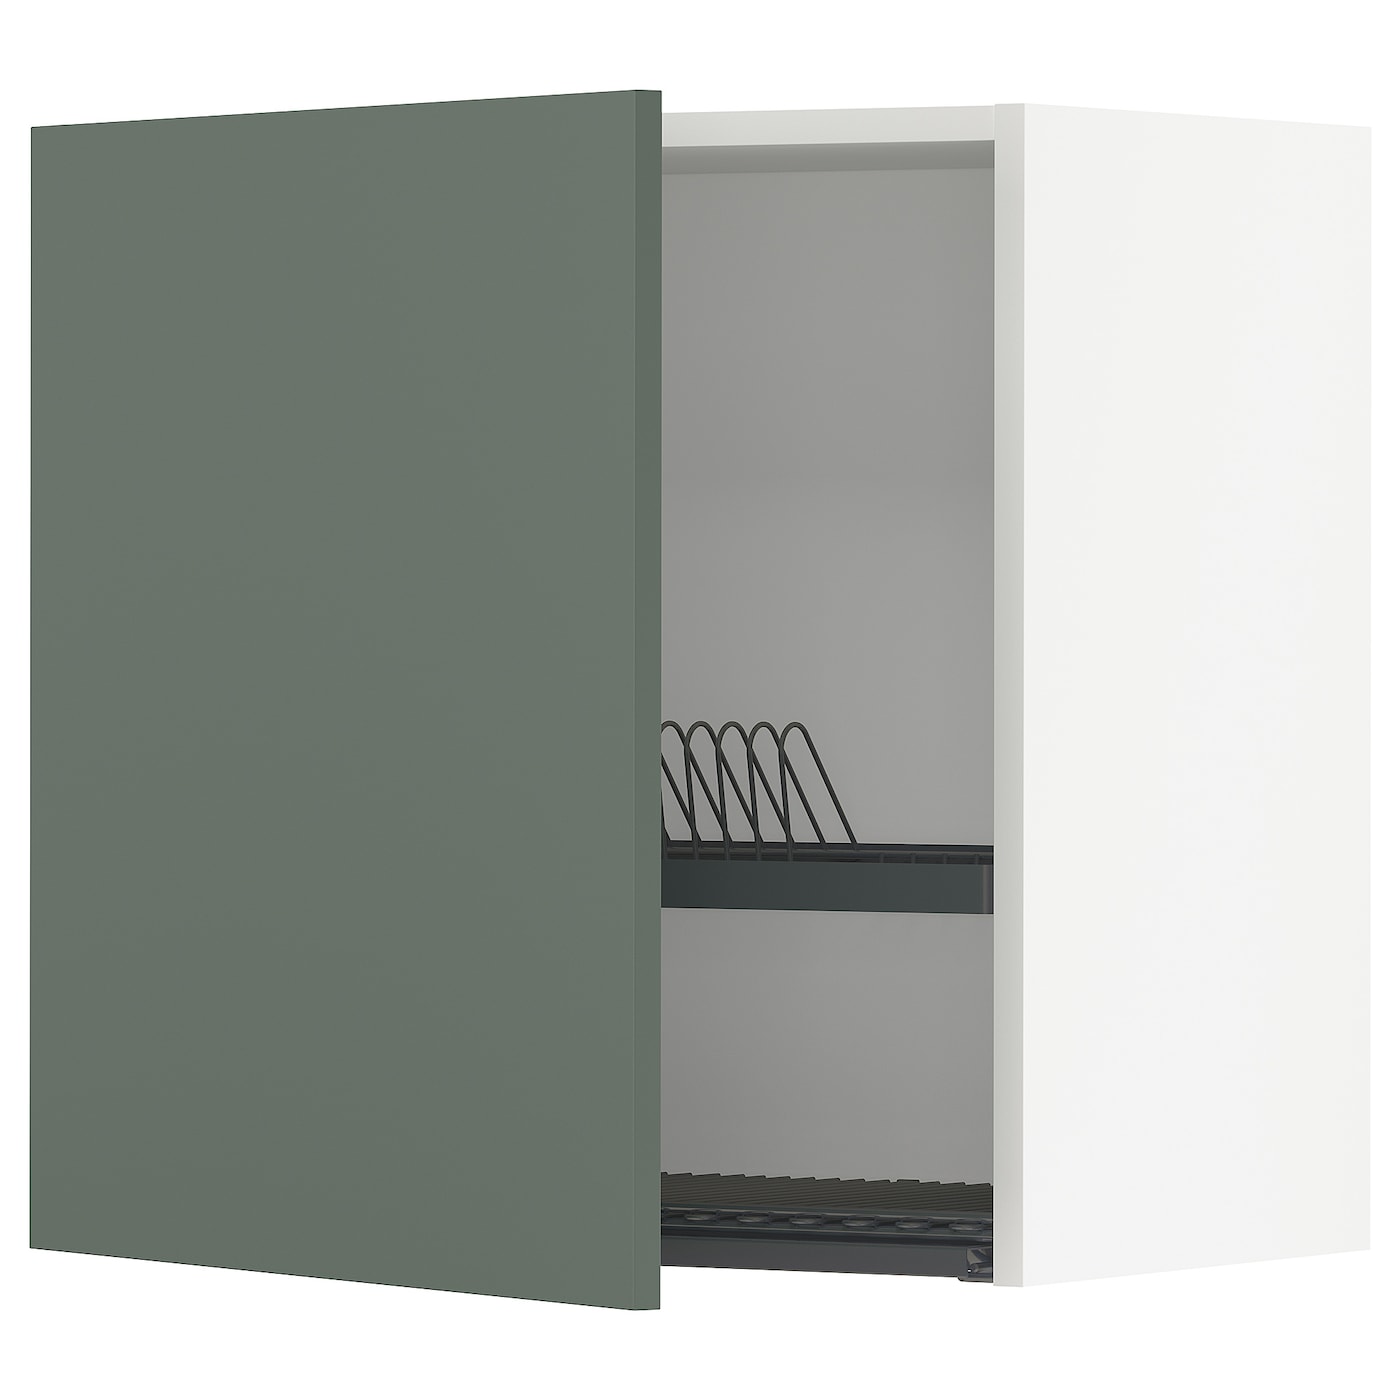 Навесной шкаф с сушилкой - METOD IKEA/ МЕТОД ИКЕА, 60х60 см, белый/темно-зеленый